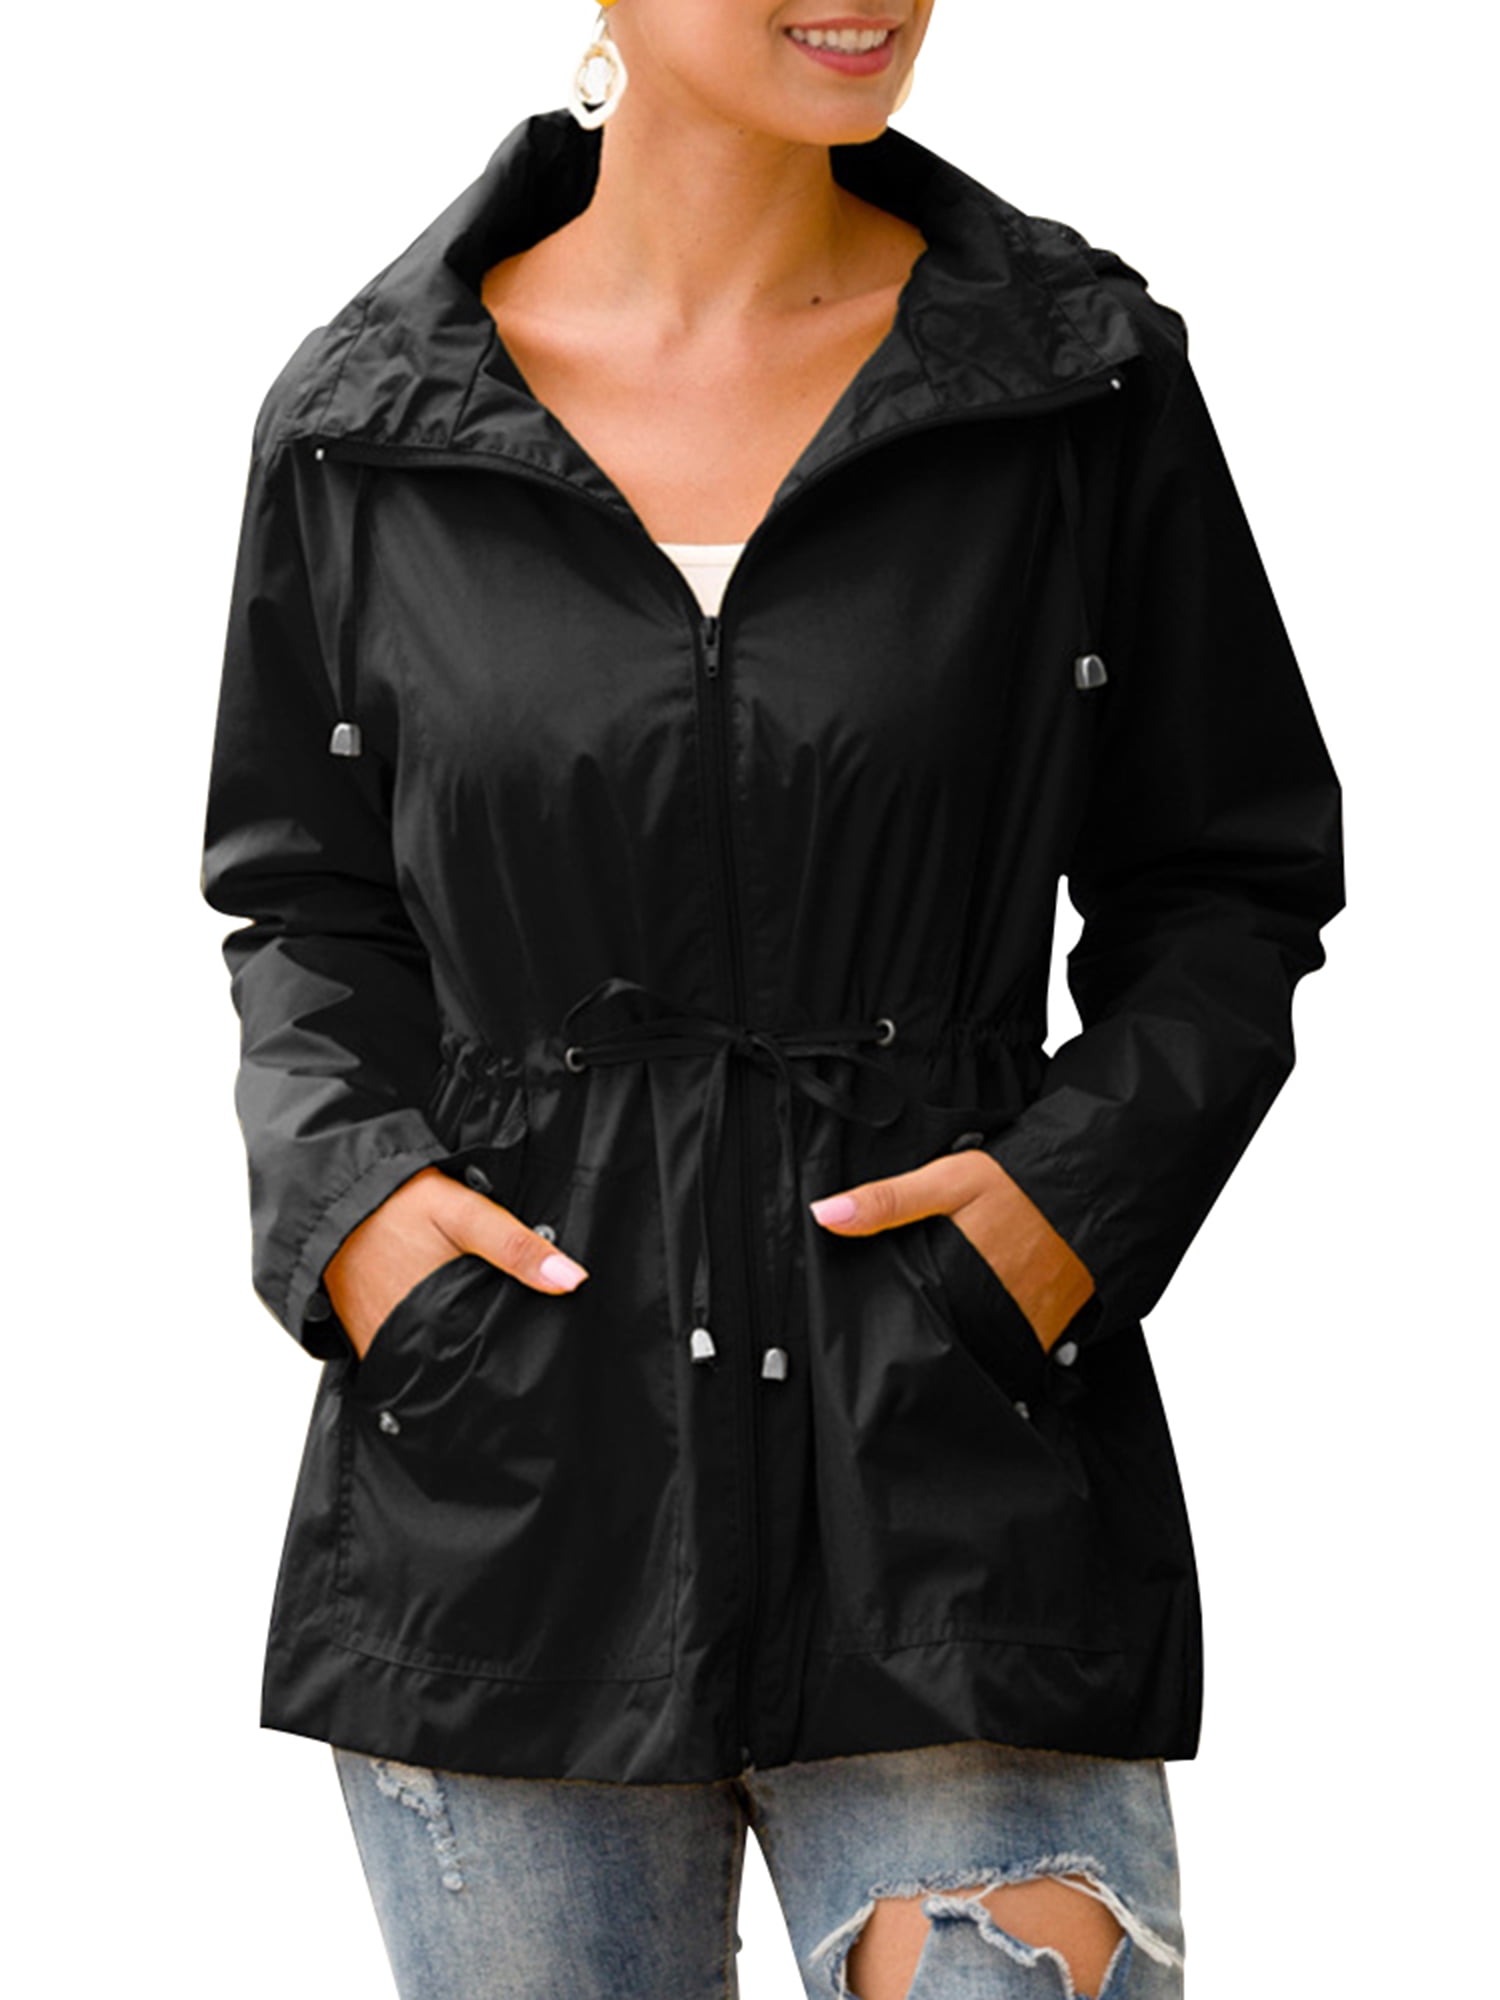 Women Lady Solid Rainproof Windproof Outdoor Long Zipper Button Hoodie Jacket Overcoat Coat Windbreaker Raincoat with Pocket